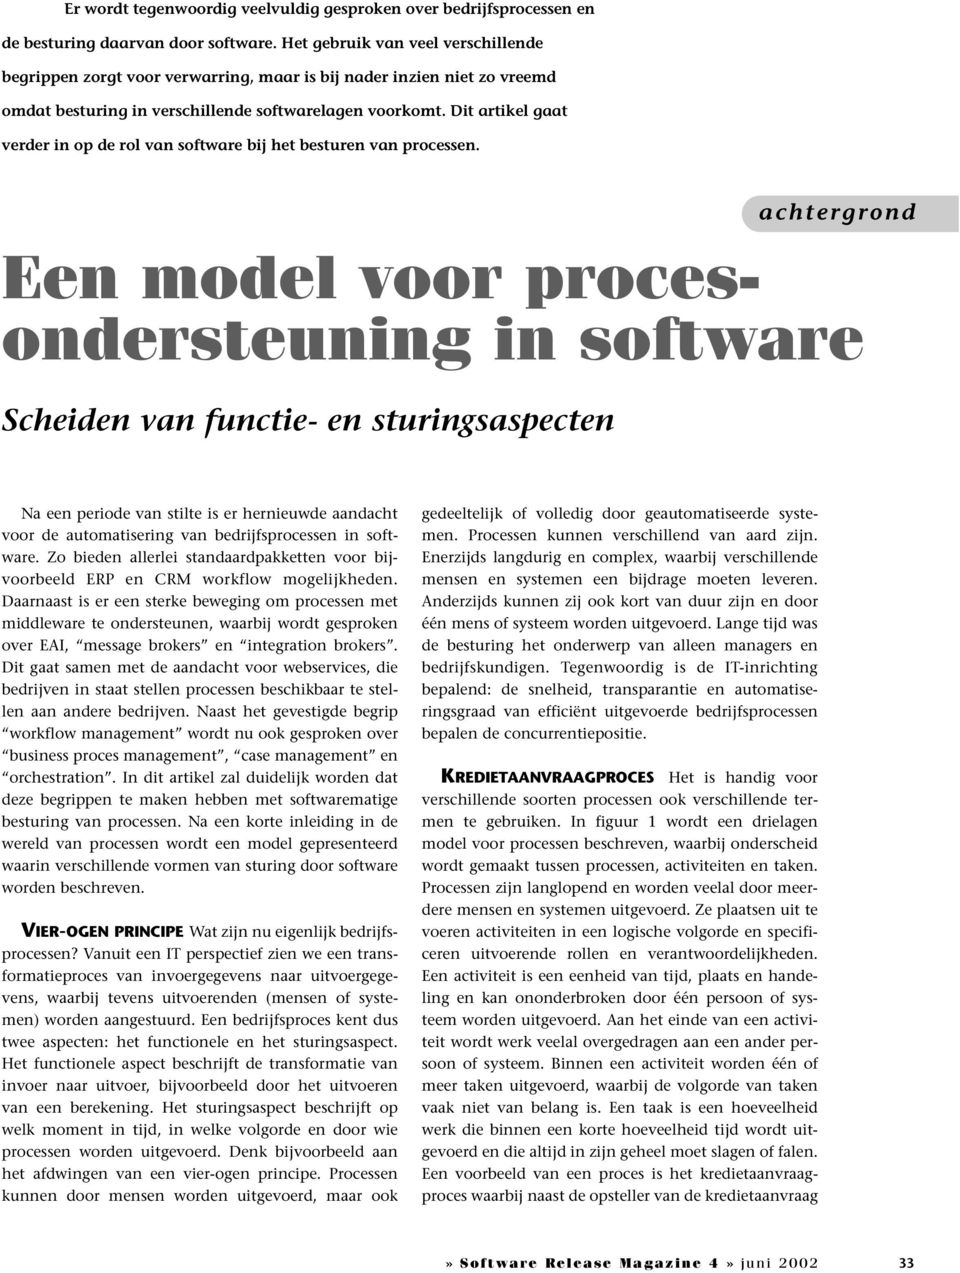 Dit artikel gaat verder in op de rol van software bij het besturen van processen.